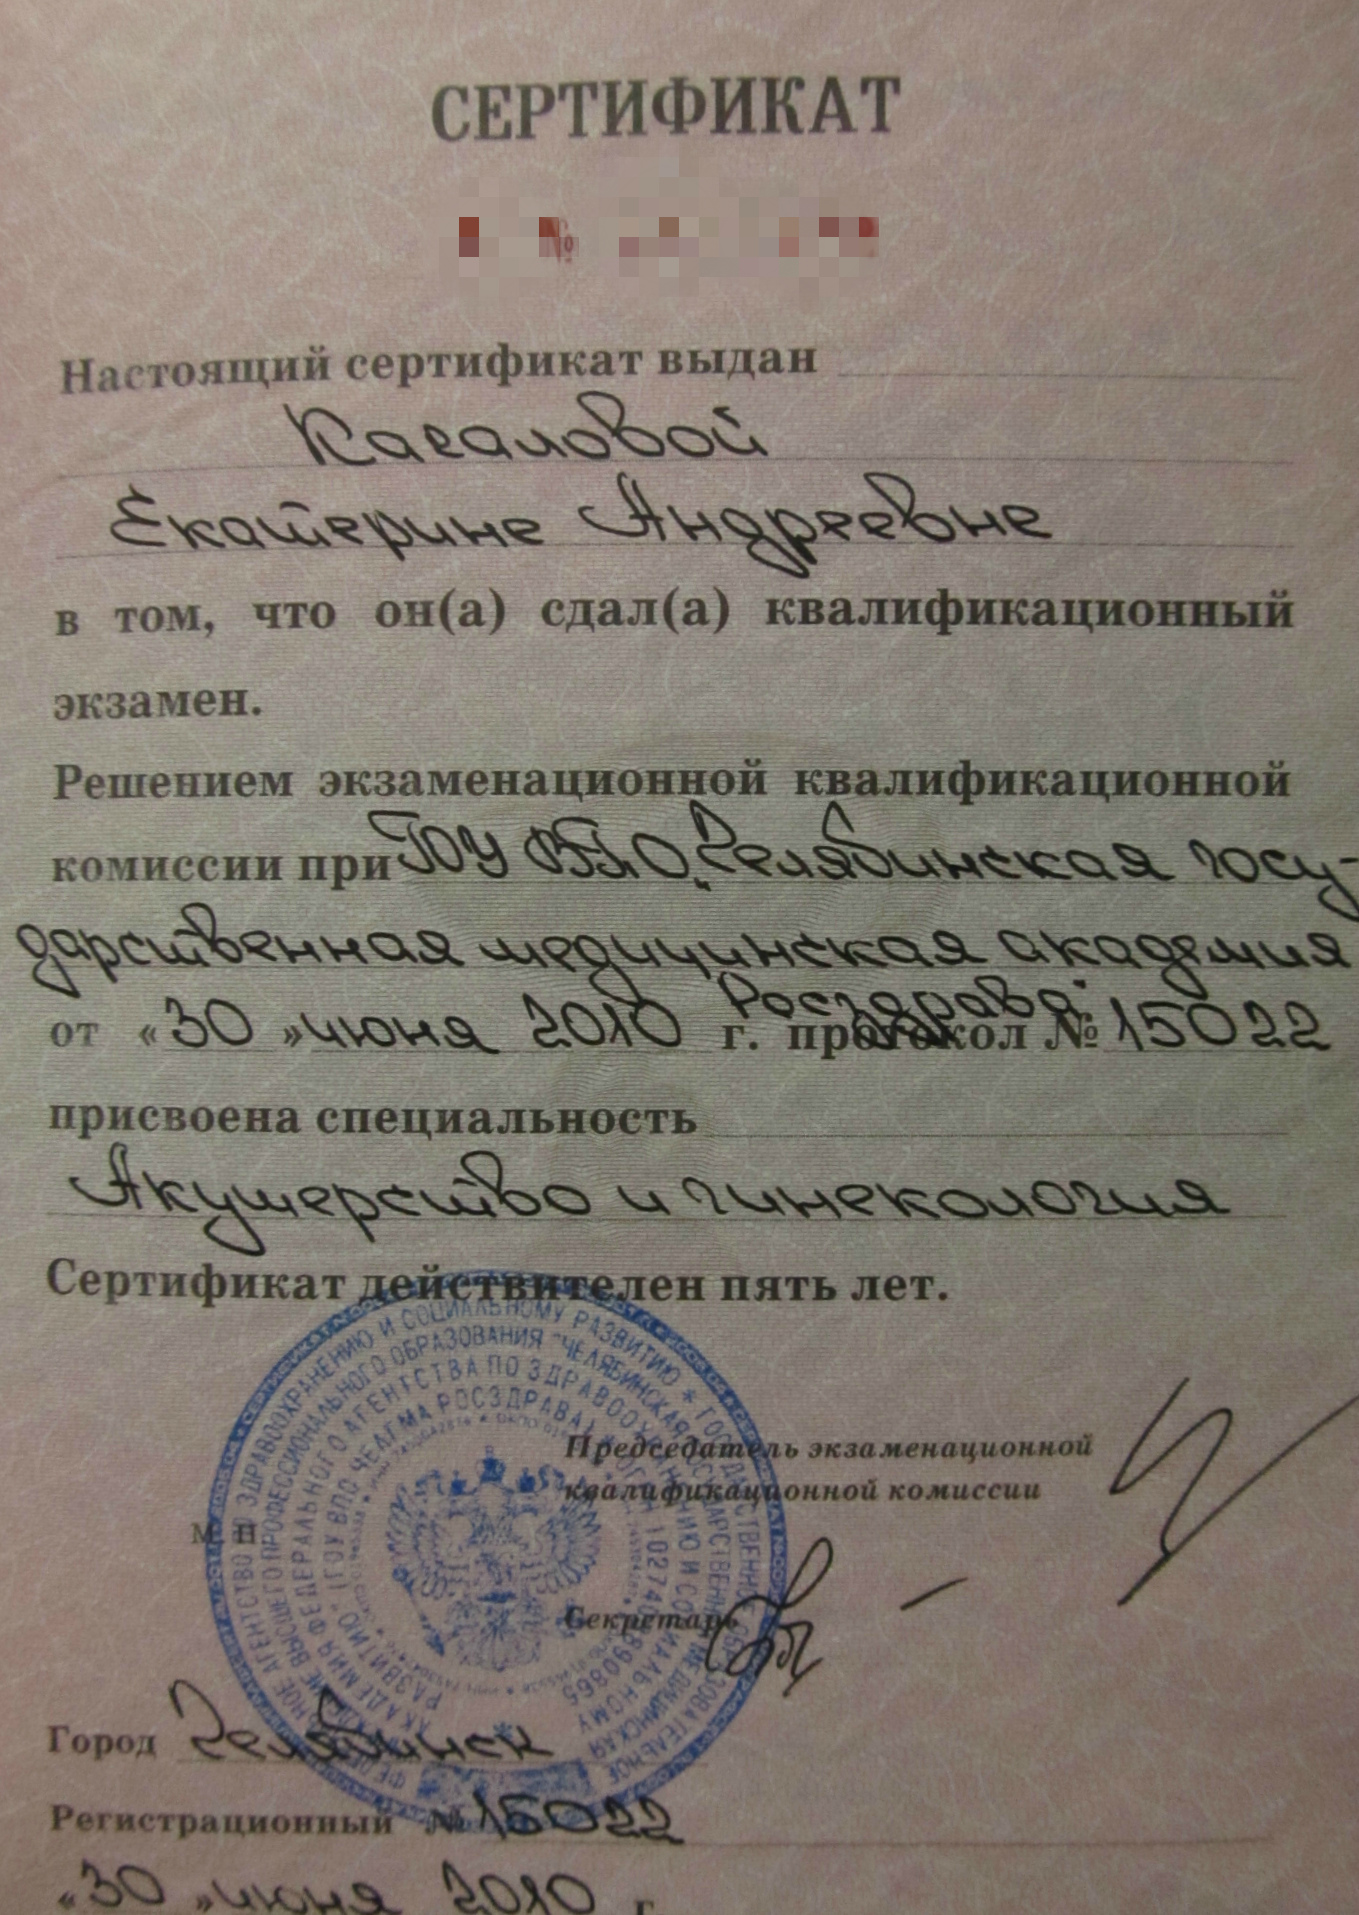 Сертификат Сибилева 